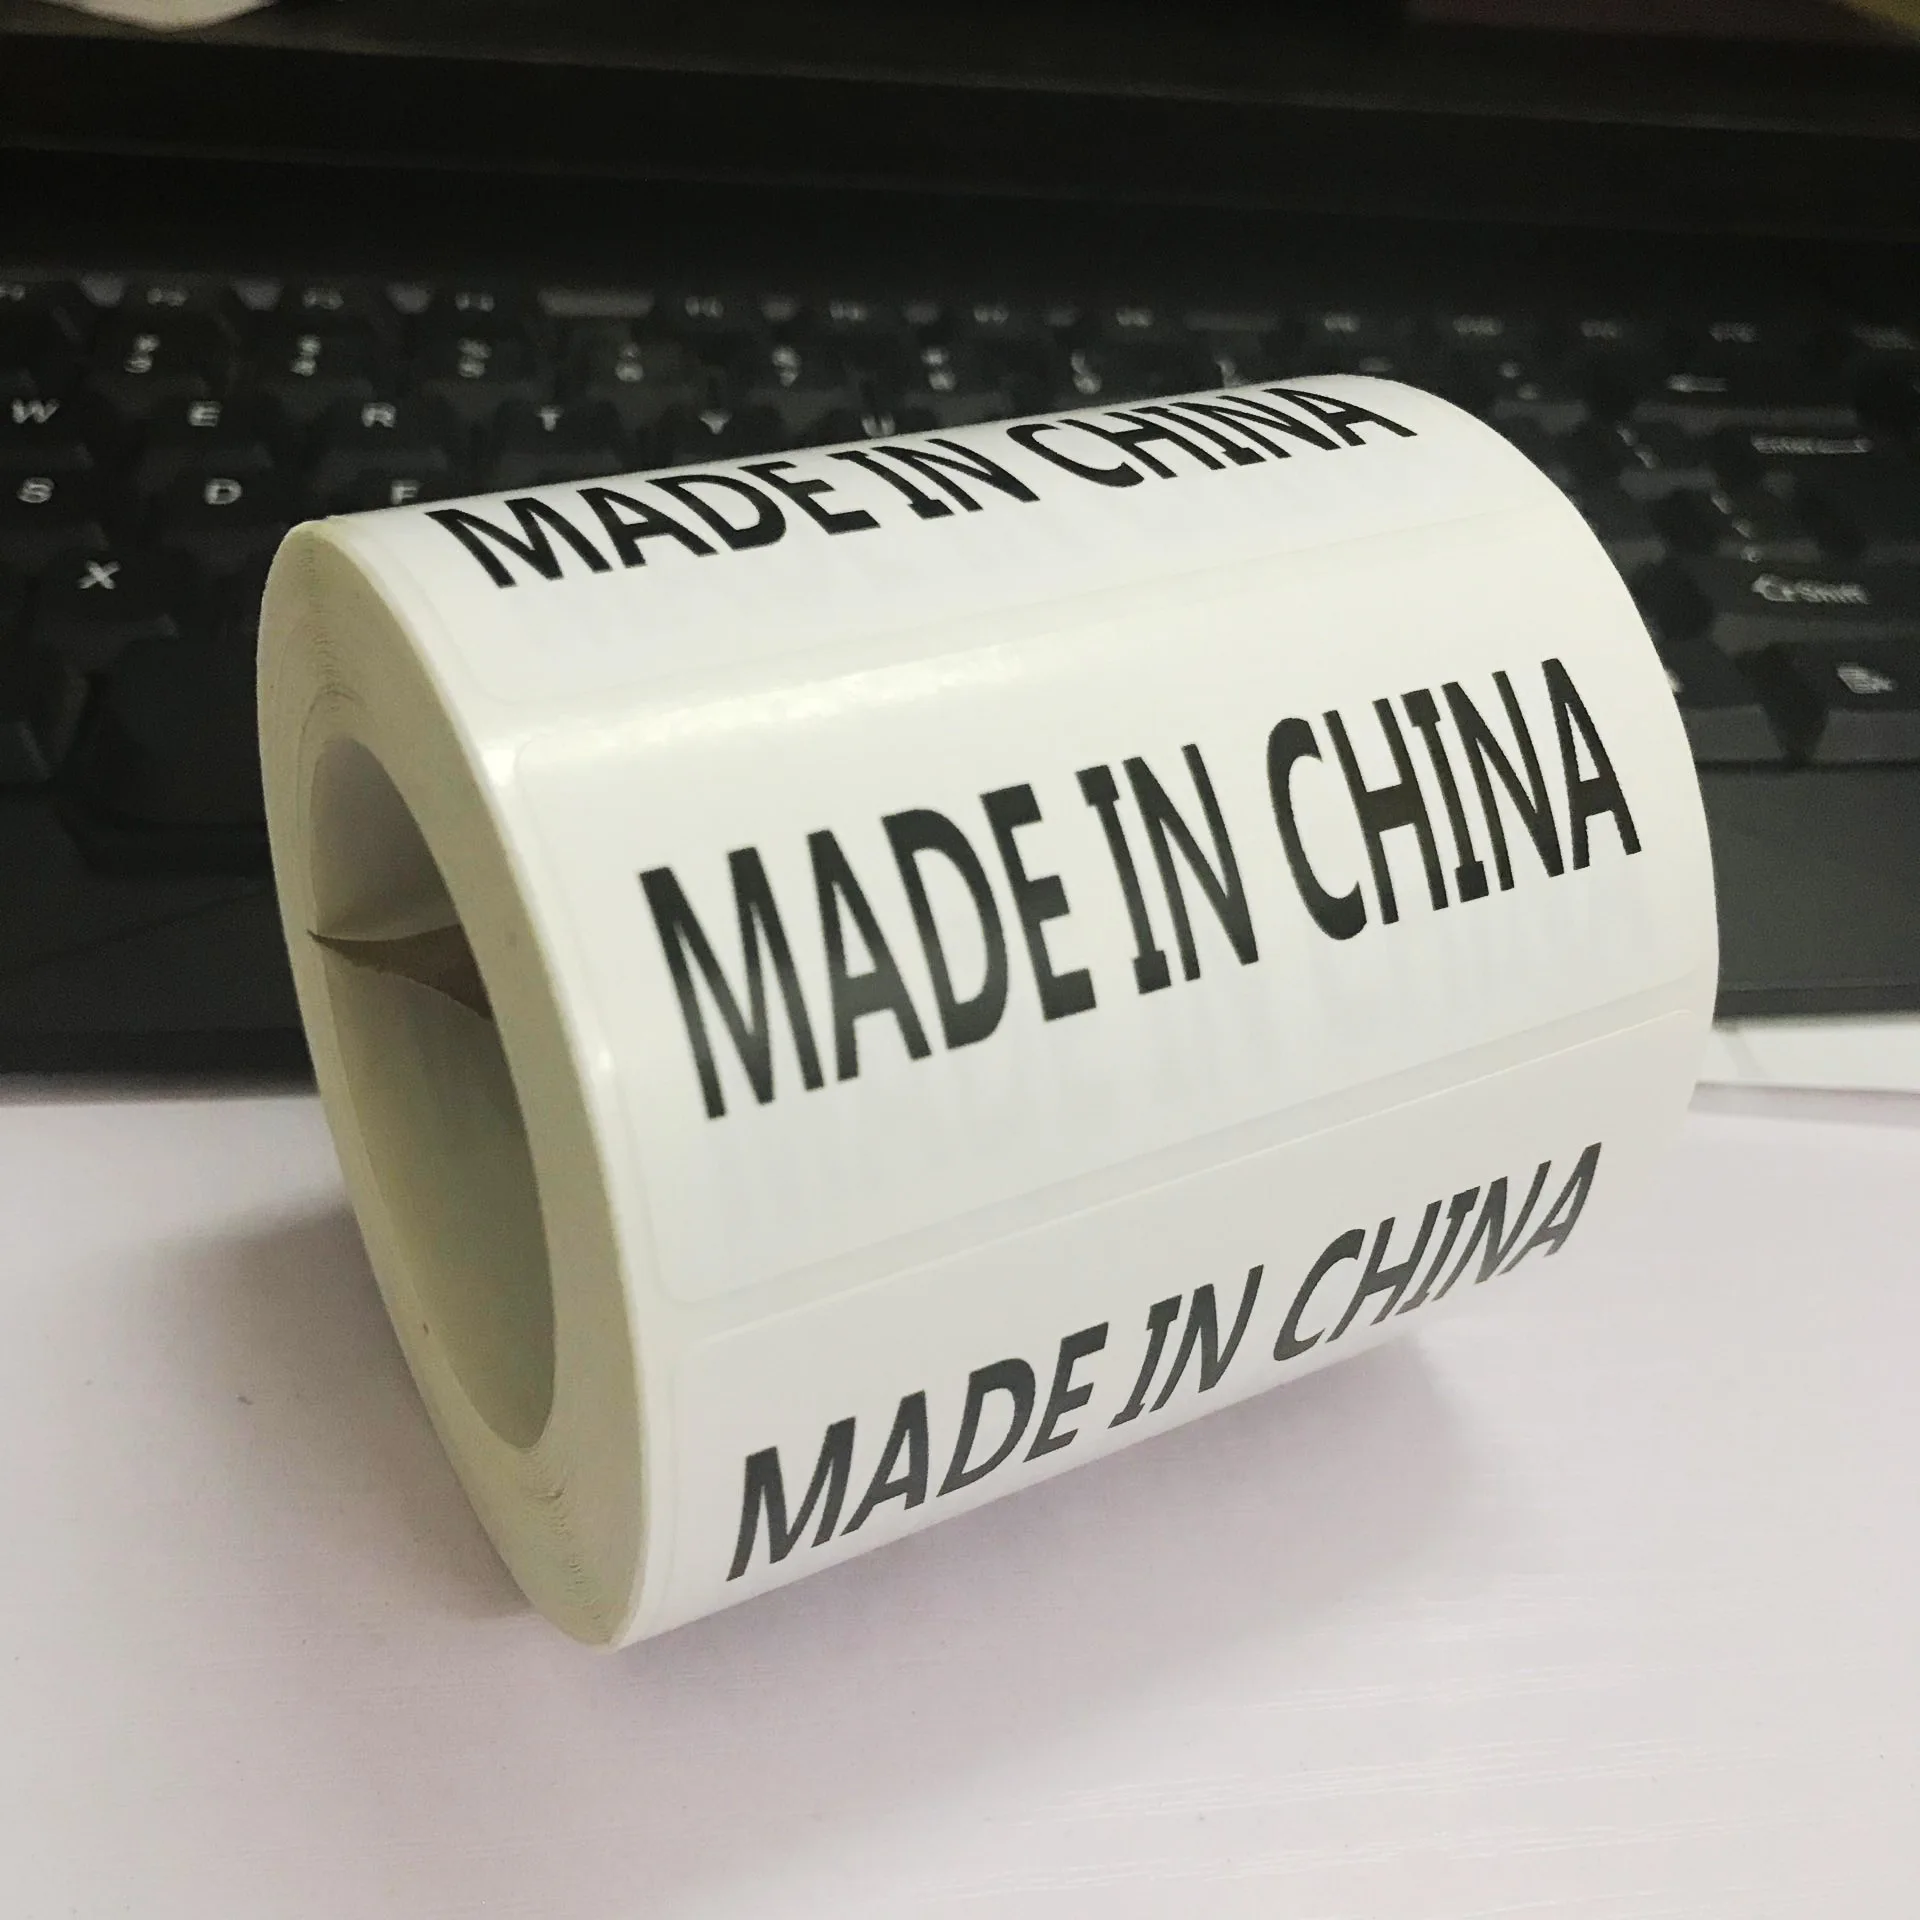 Mobile Abdeckung Aufkleber Großhandelsprodukte zu Fabrikspreisen von  Herstellern in China, Indien, Korea, usw.